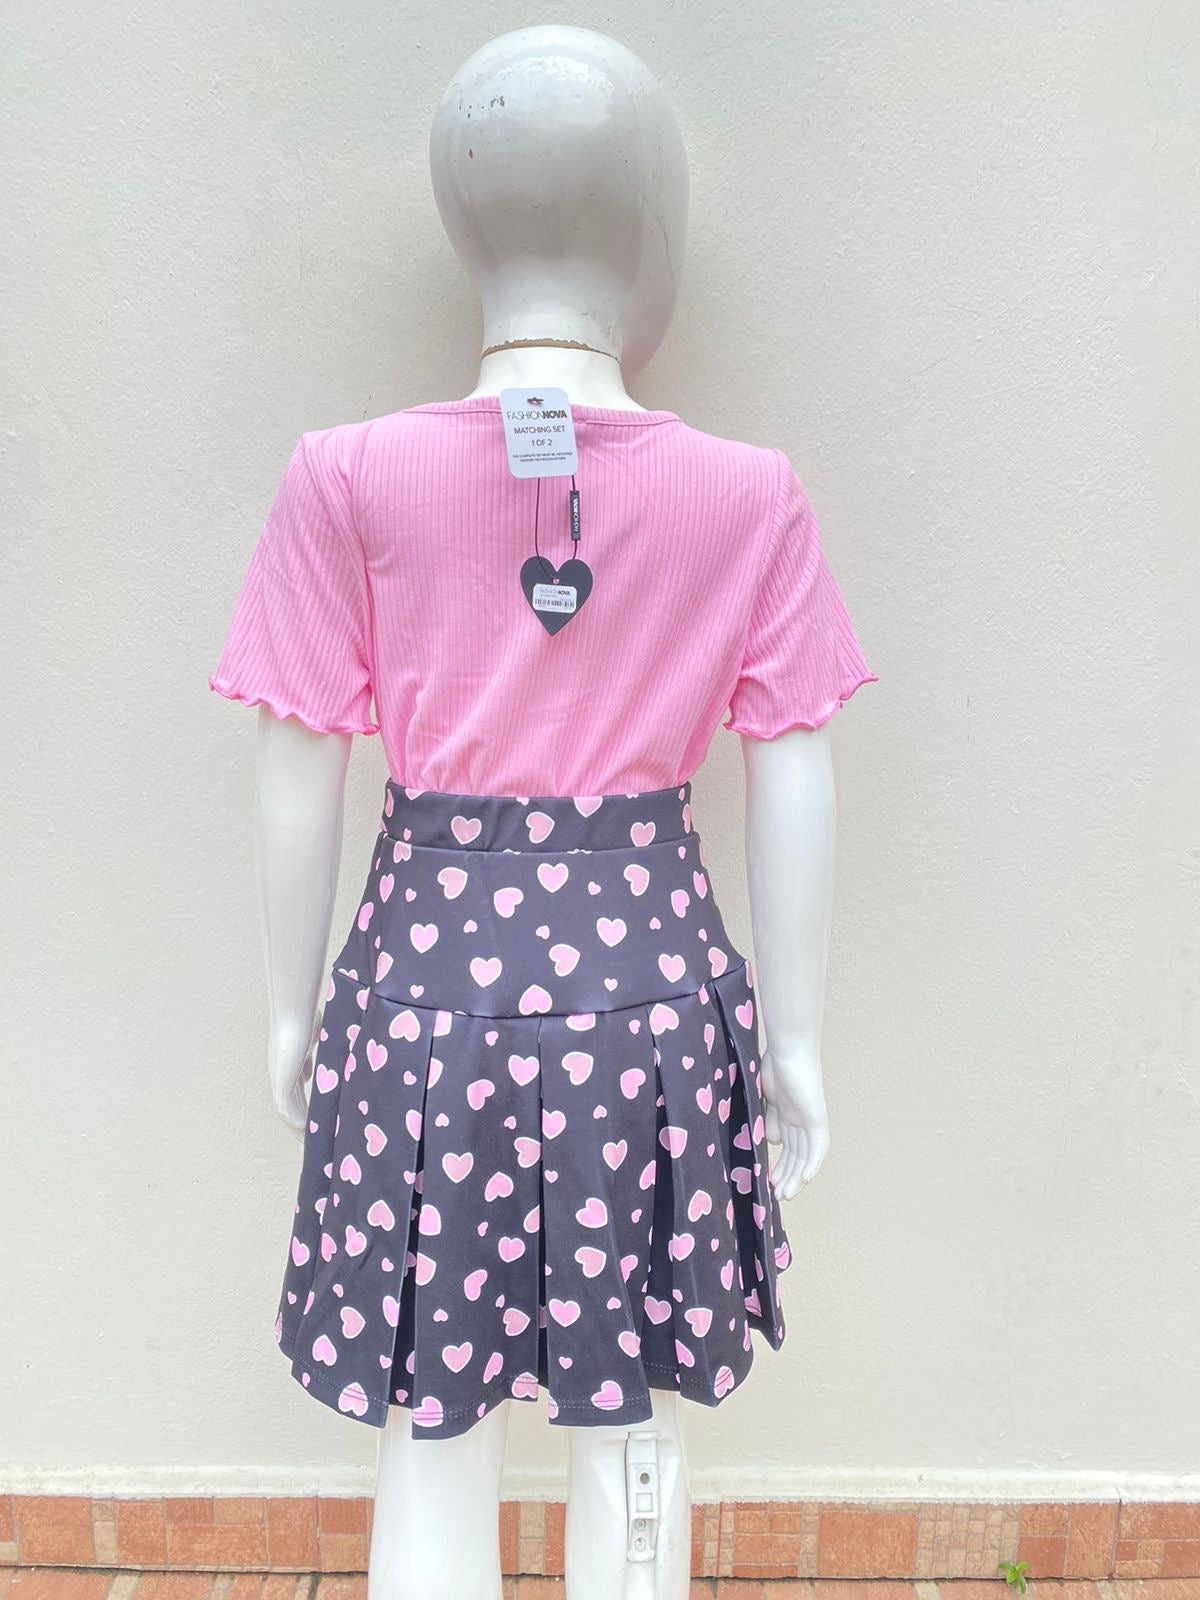 Conjunto Fashion Nova original de falda y top, rosado con negro y corazones en rosado.